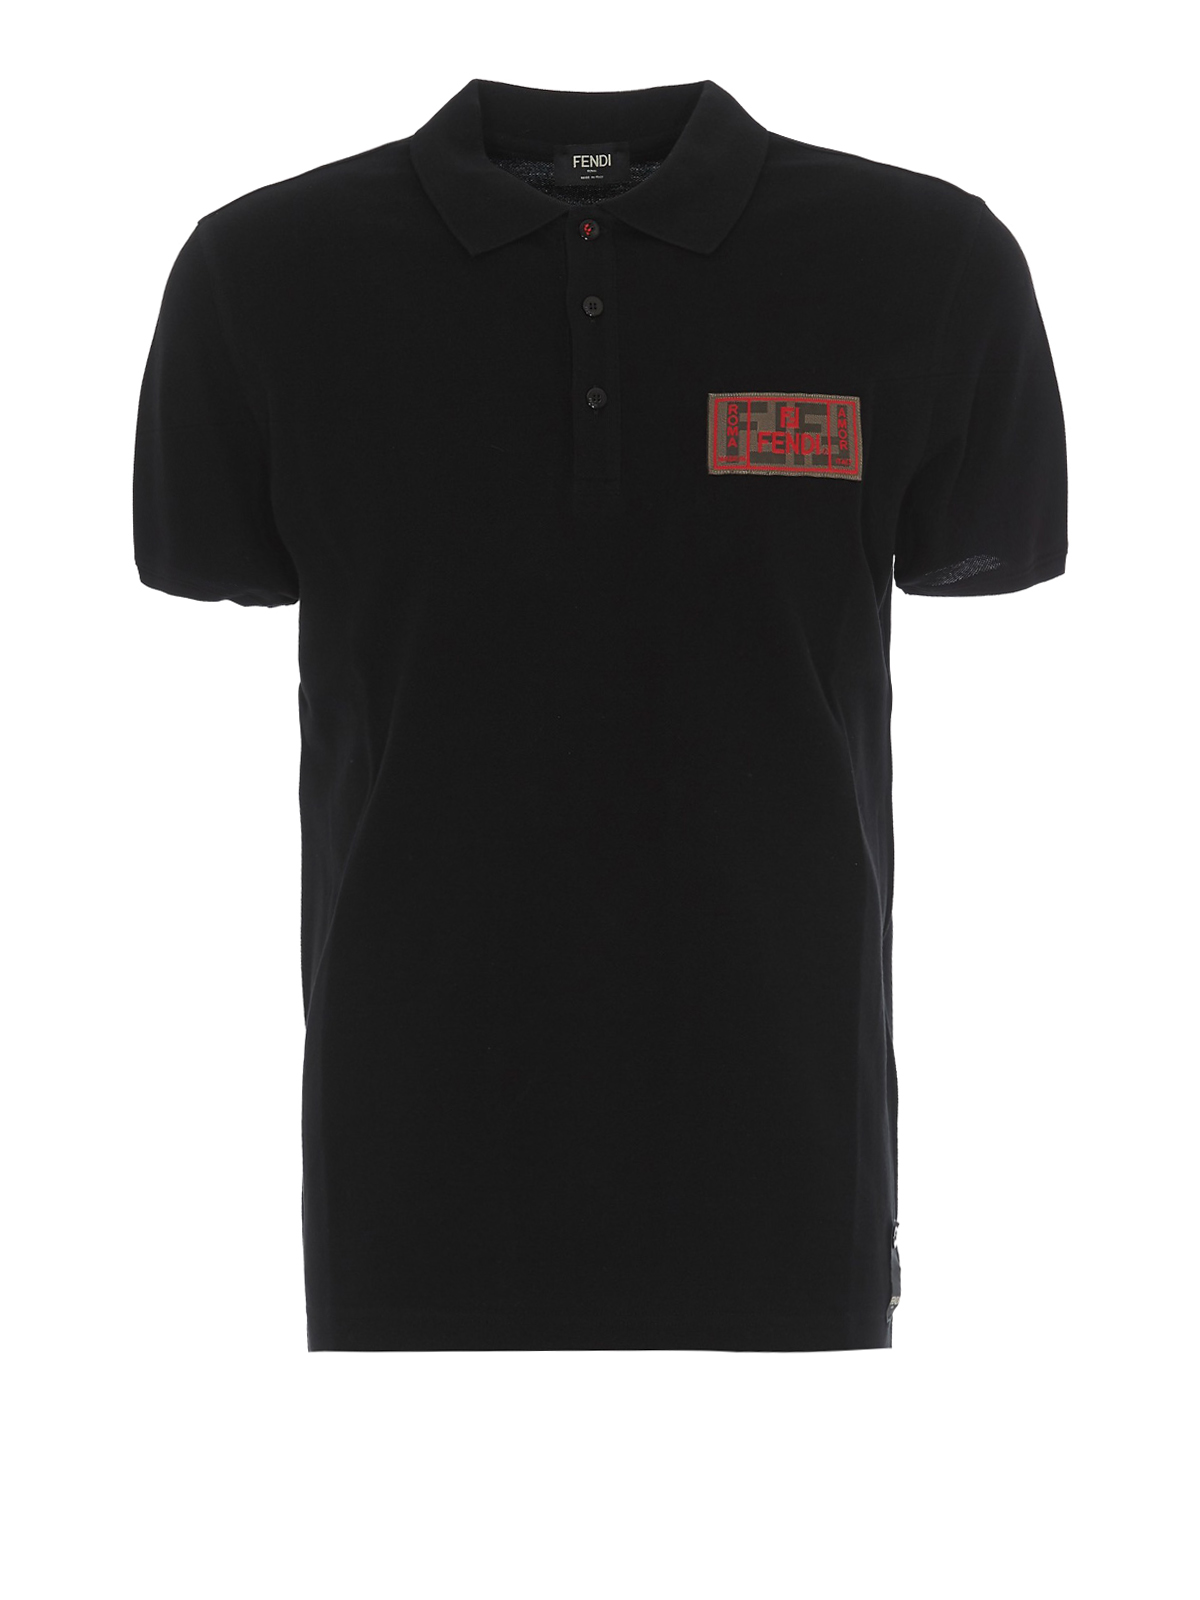 ポロシャツ Fendi - ポロシャツ - 黒 - FAF510A8K4GME